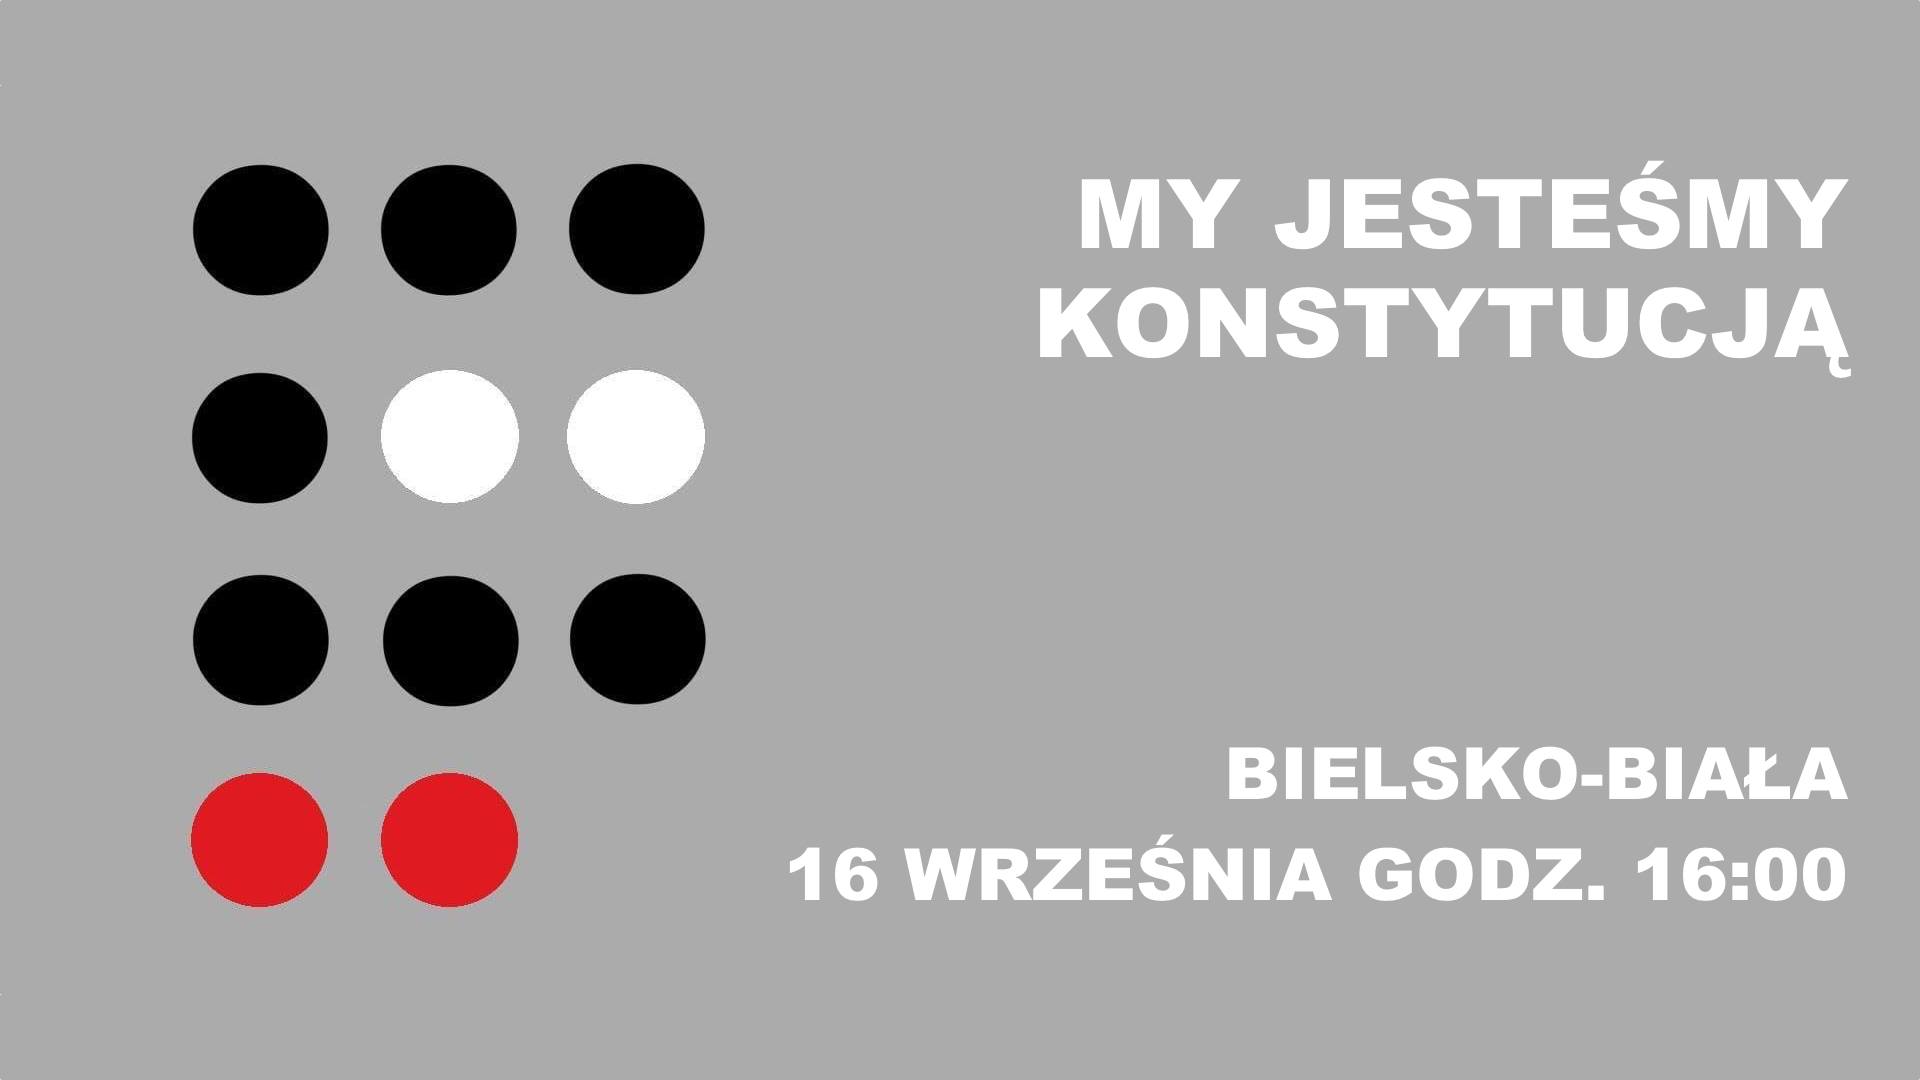 My Jesteśmy Konstytucją. Bielsko Biała, 16 września, godz. 16:00 @ Bielsko-Biała | śląskie | Polska